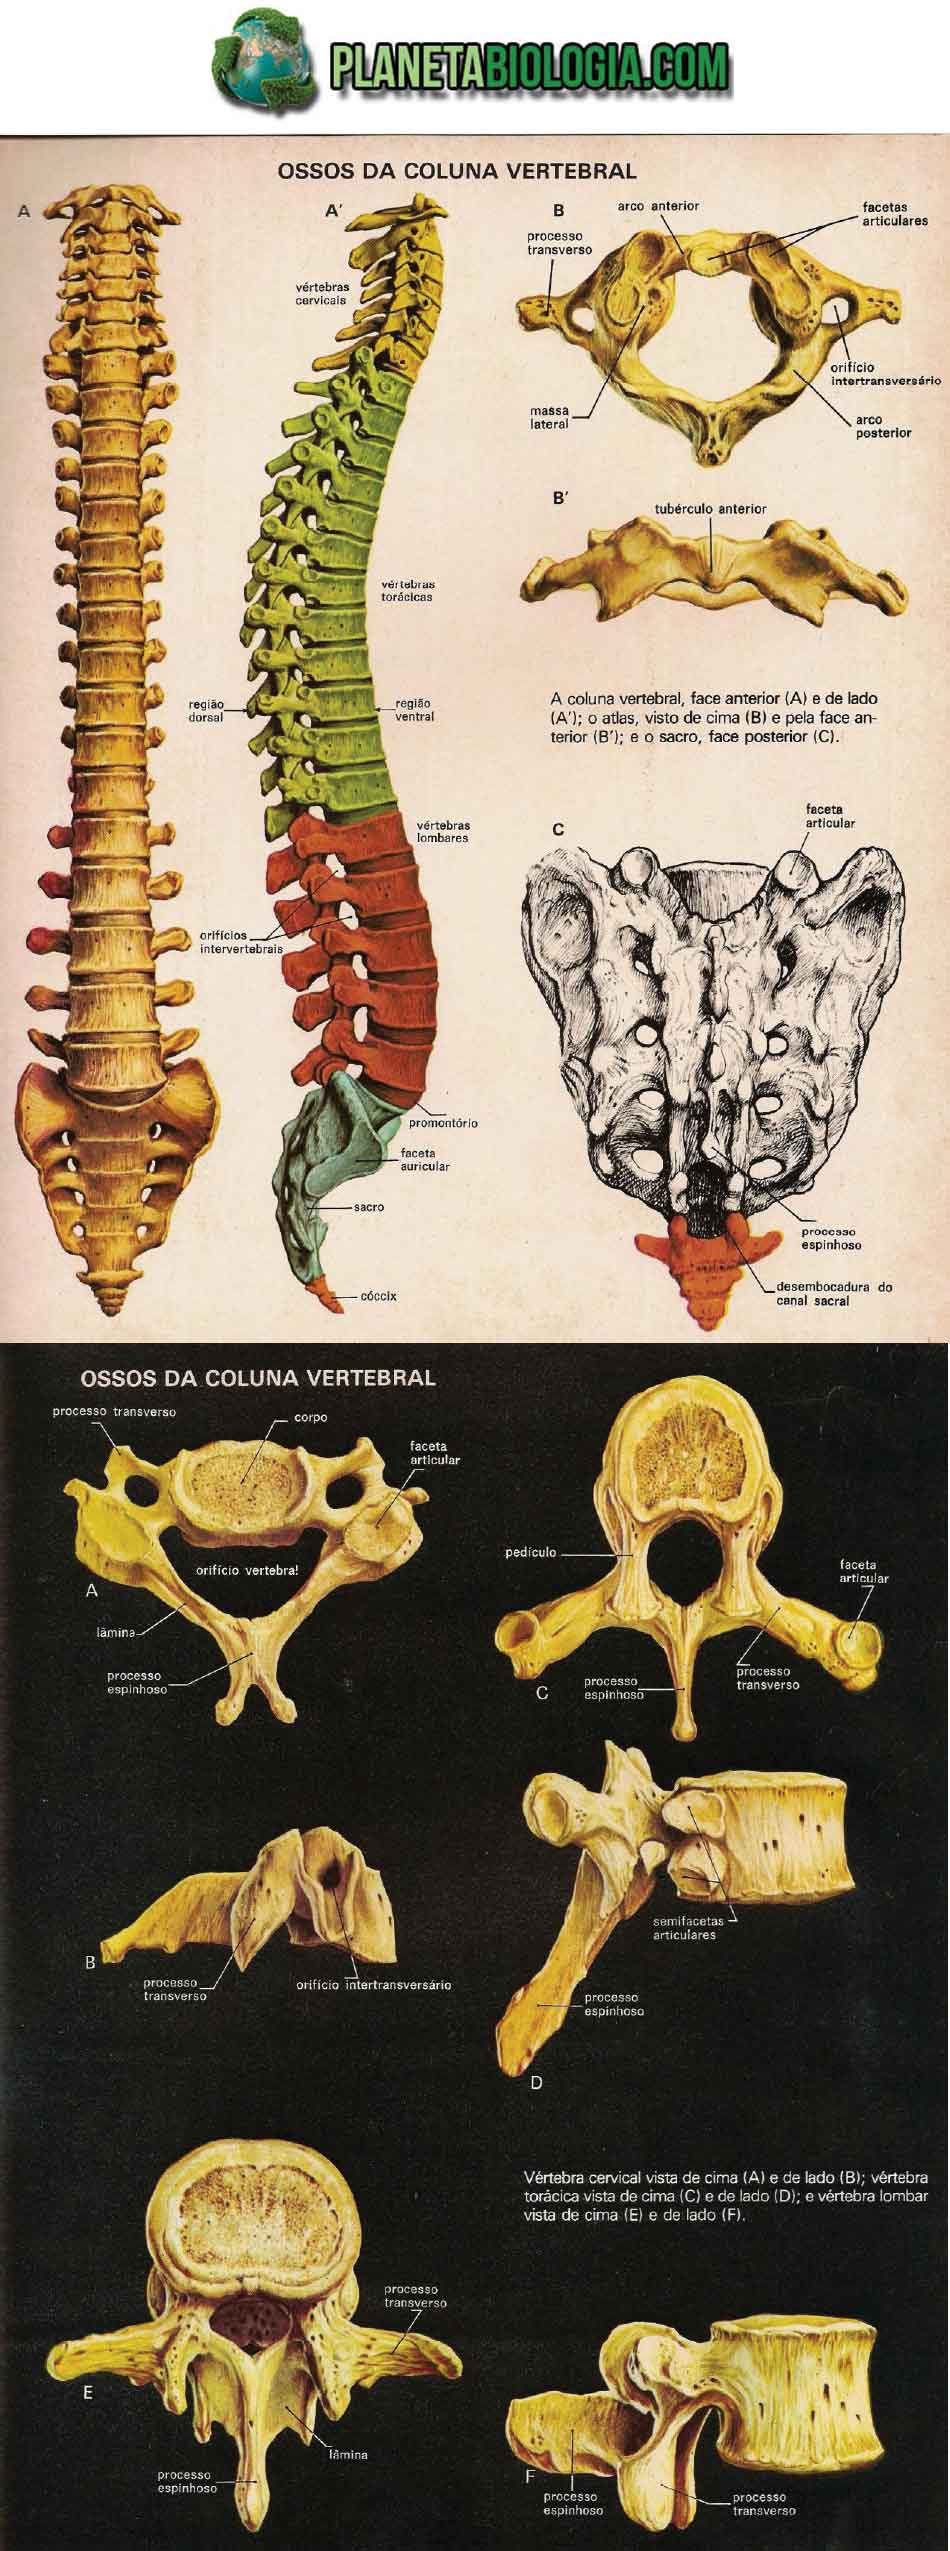 Ossos da coluna vertebral